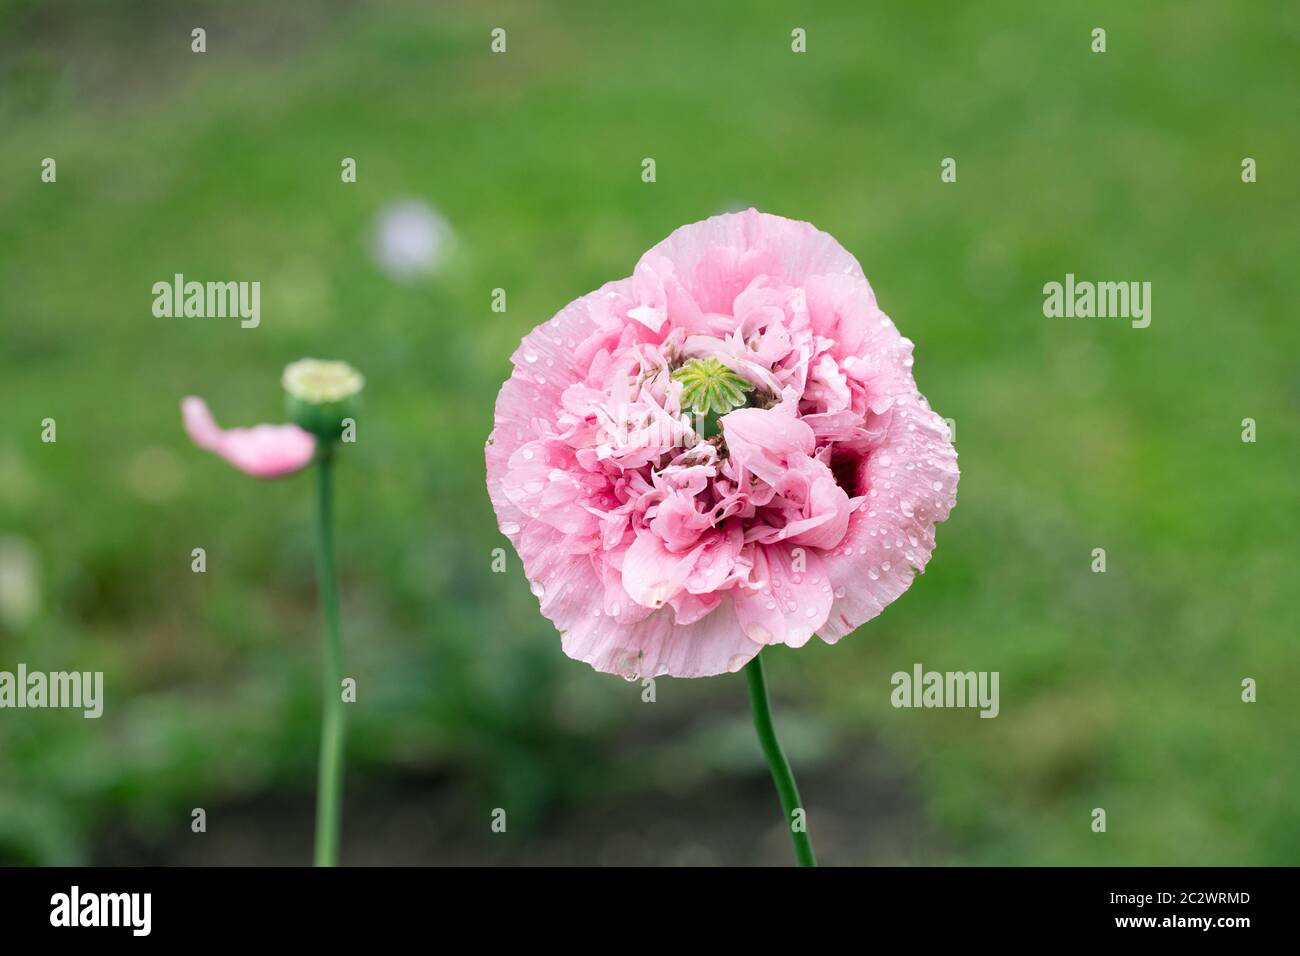 Rosa Mohnblume von 'Pink Peony' Brotsamen im Garten. Schöner Blütenkopf in voller Blüte, Nahaufnahme. Stockfoto